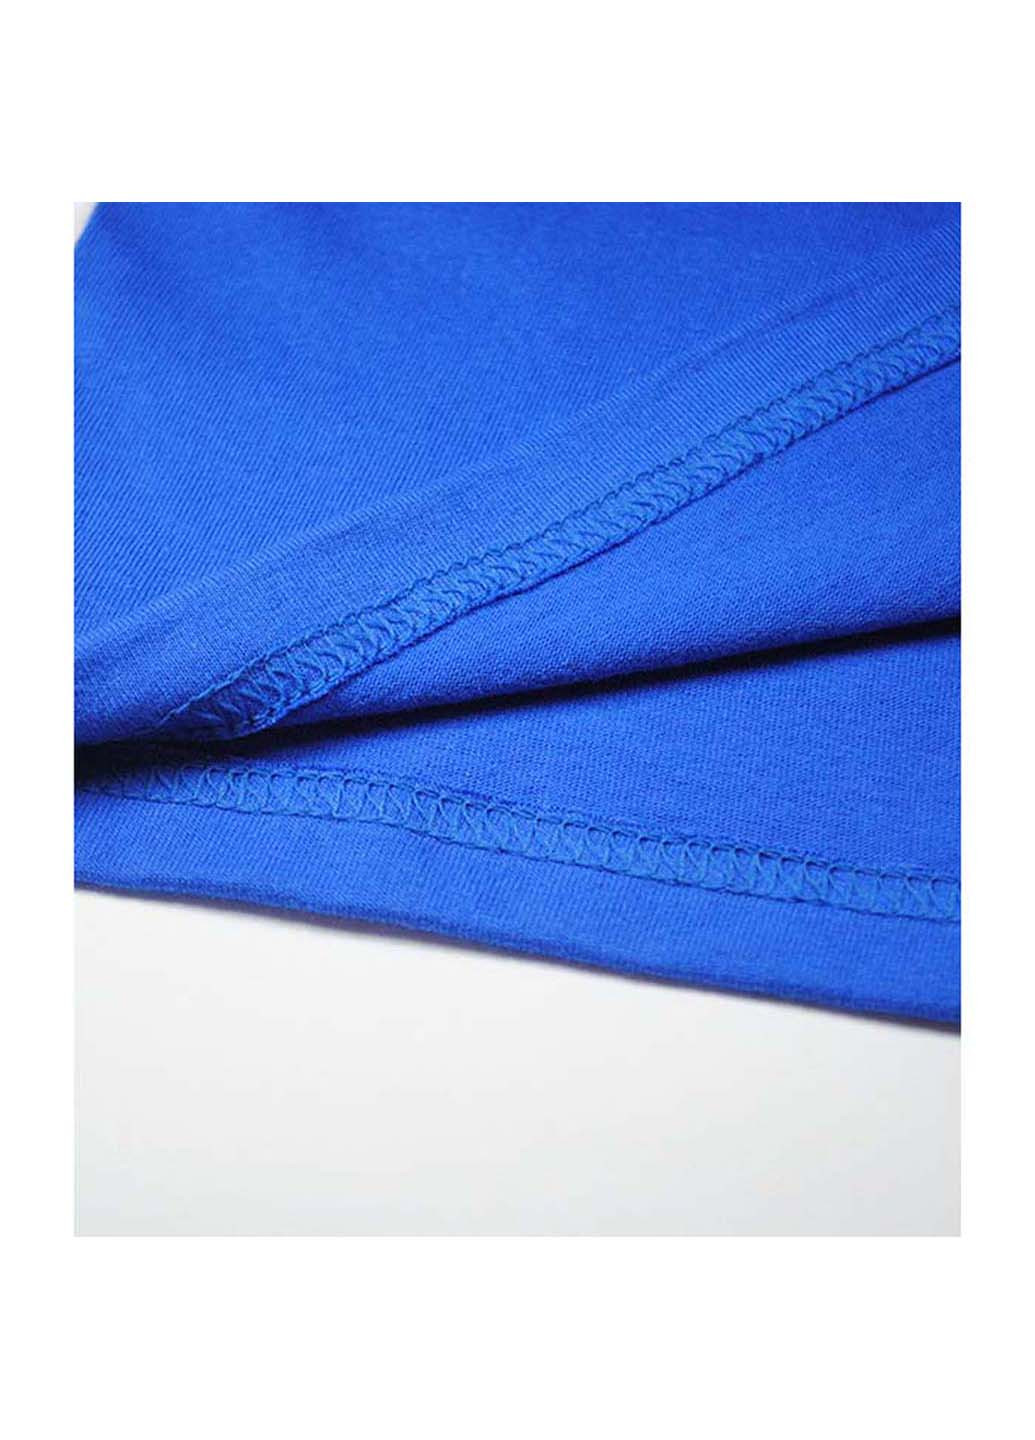 Синяя демисезонная футболка Fruit of the Loom 61015051164